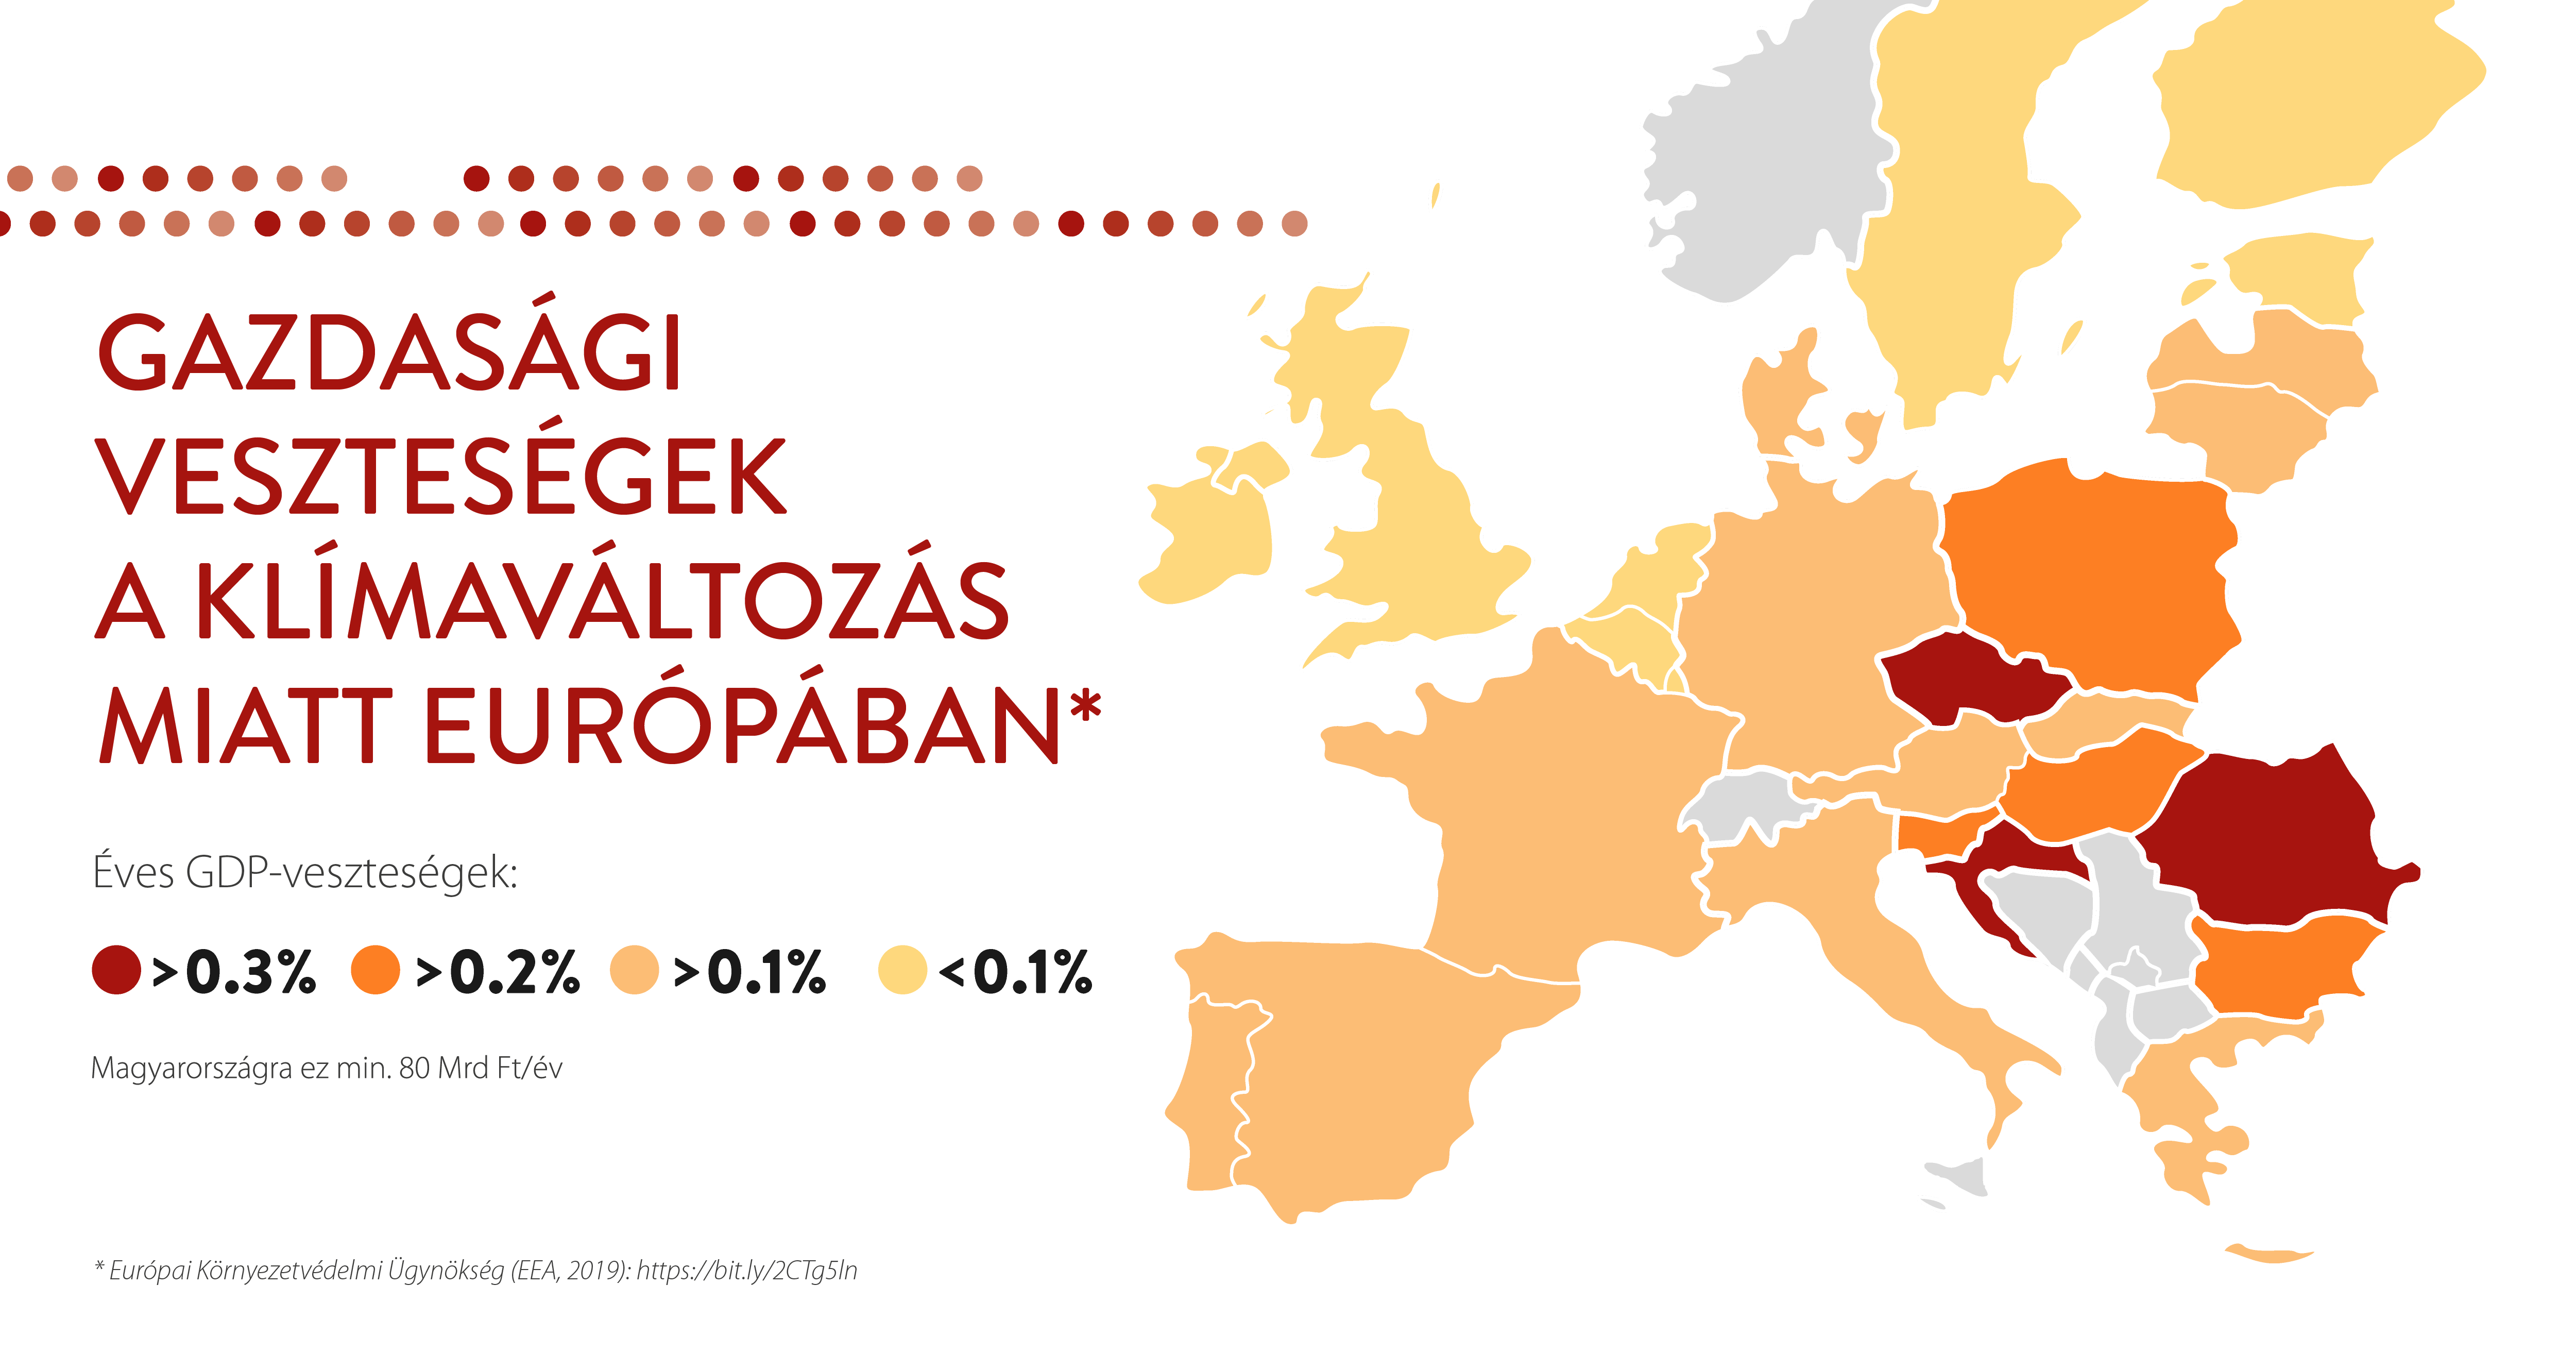 A magyar kormány kiállását várják az EU karbonsemlegessége mellett